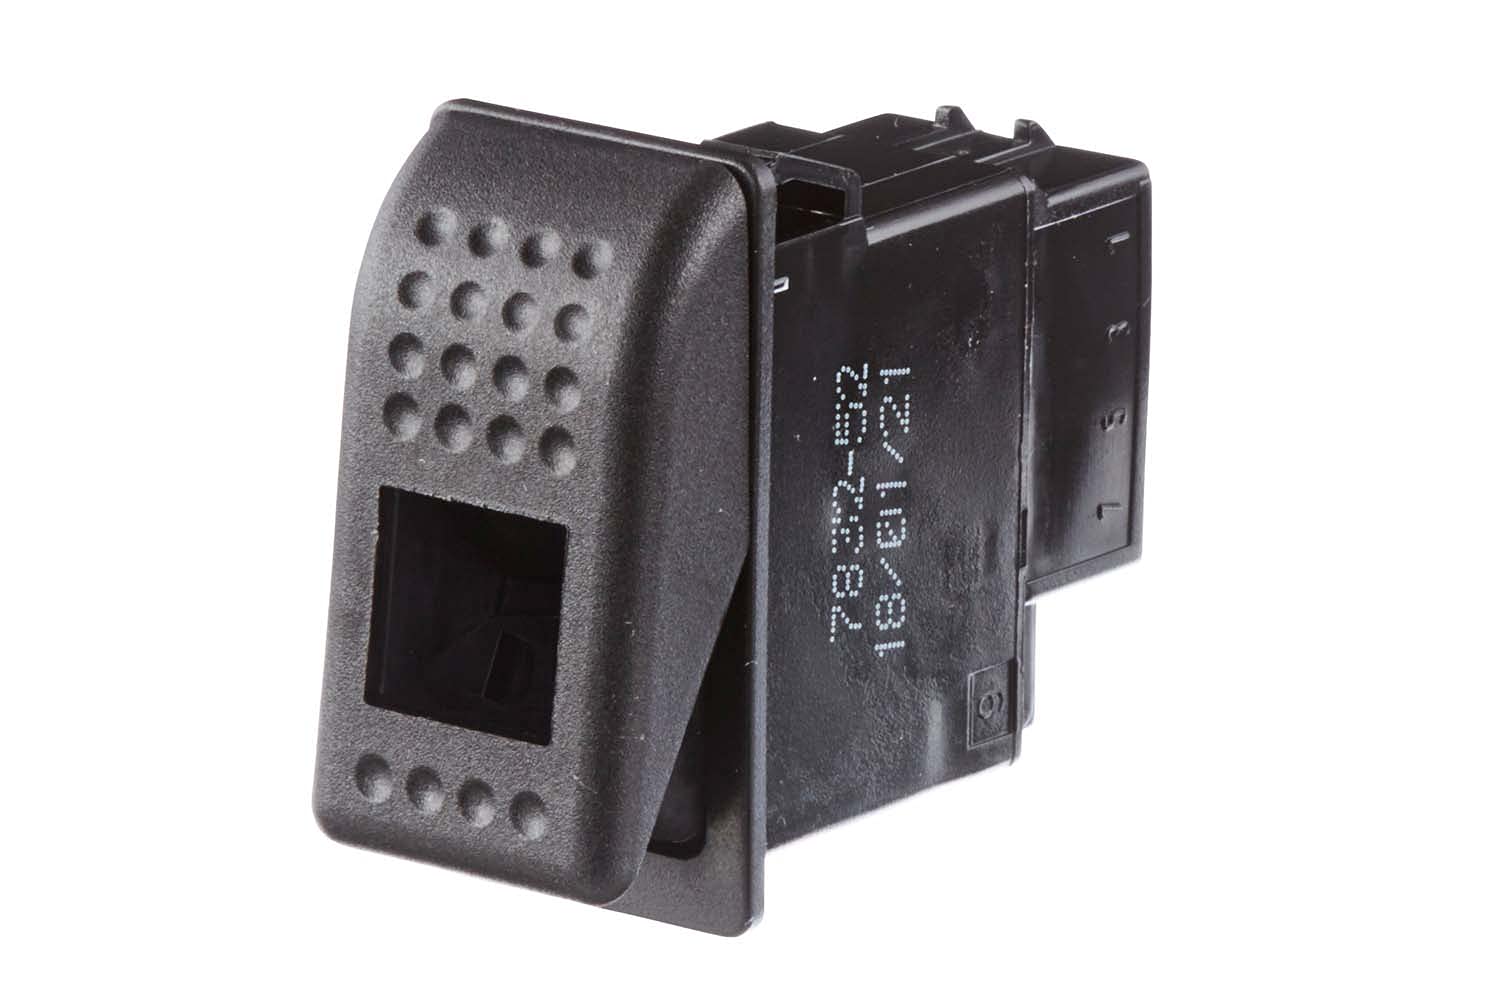 HELLA Schalter - Wippbetätigung - Ausstattungsvar.: I->0 - Anschlussanzahl: 6 - ohne Komfortfunktion - 6GM 007 832-521 von Hella